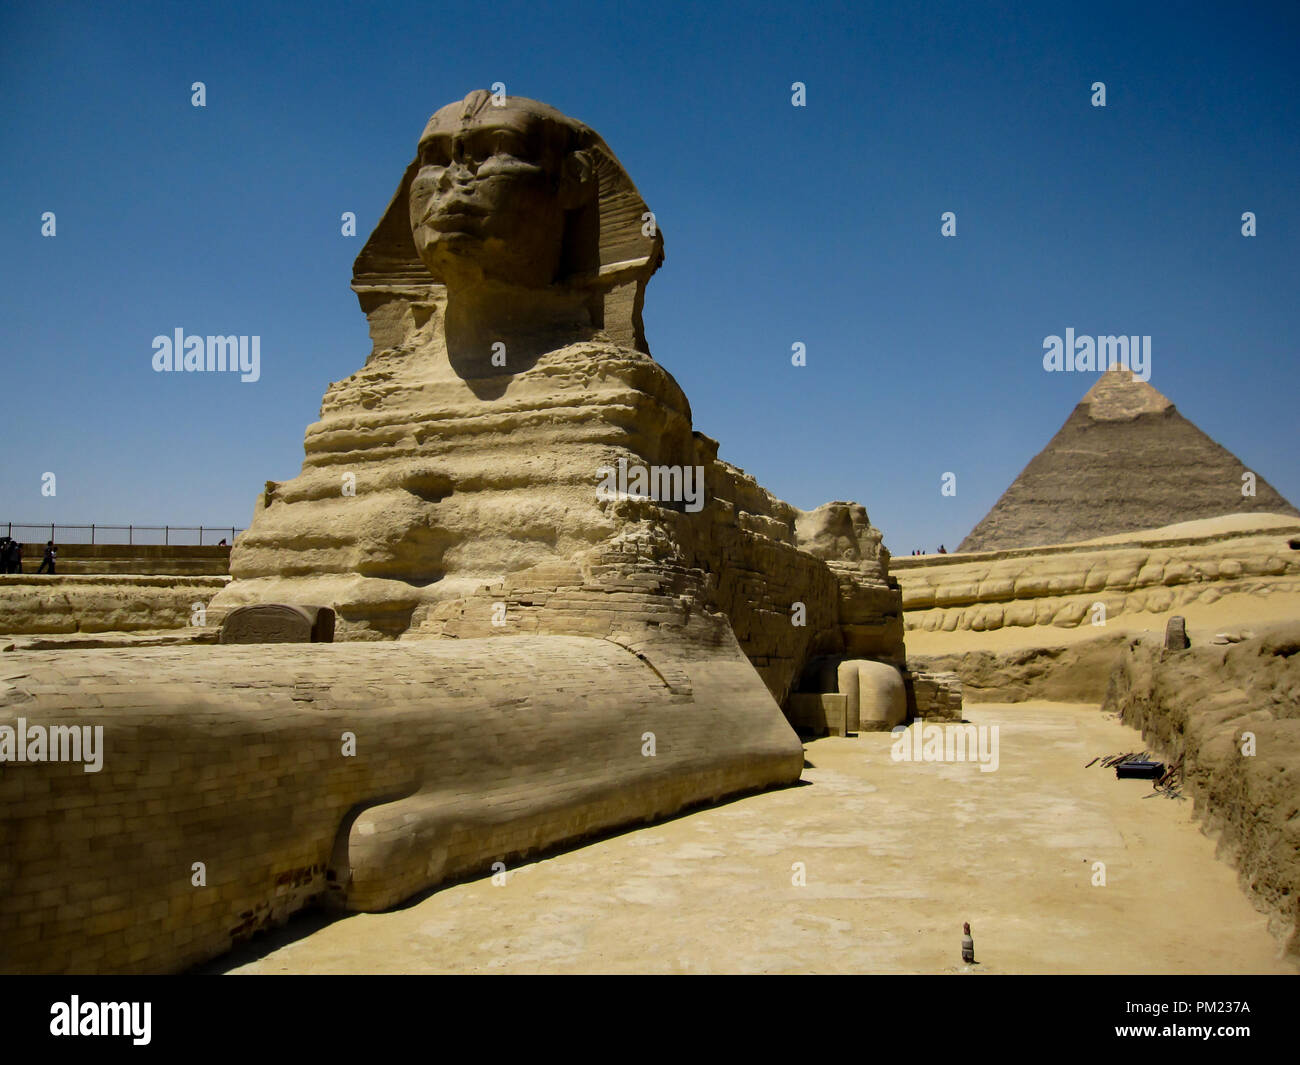 Nahaufnahme Blick auf die Große Sphinx von Gizeh, Ägypten in einem begrenzten Bereich. Dies ist ein wichtiges touristisches Ziel und wichtige archäologische Stätte. Stockfoto